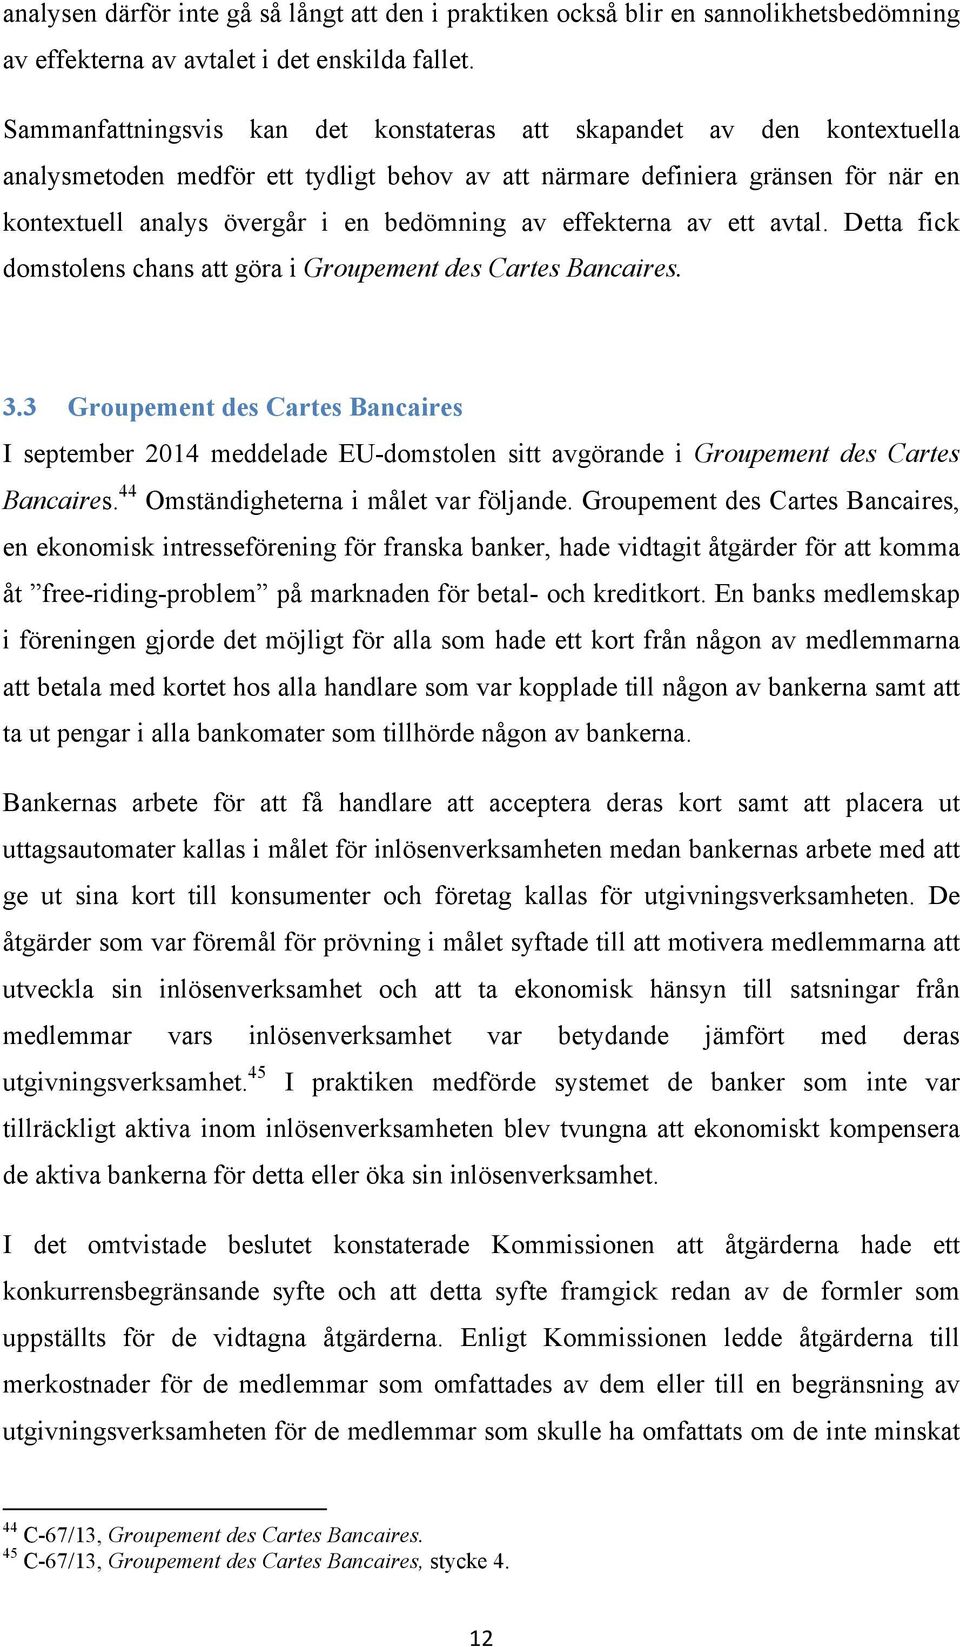 av effekterna av ett avtal. Detta fick domstolens chans att göra i Groupement des Cartes Bancaires. 3.